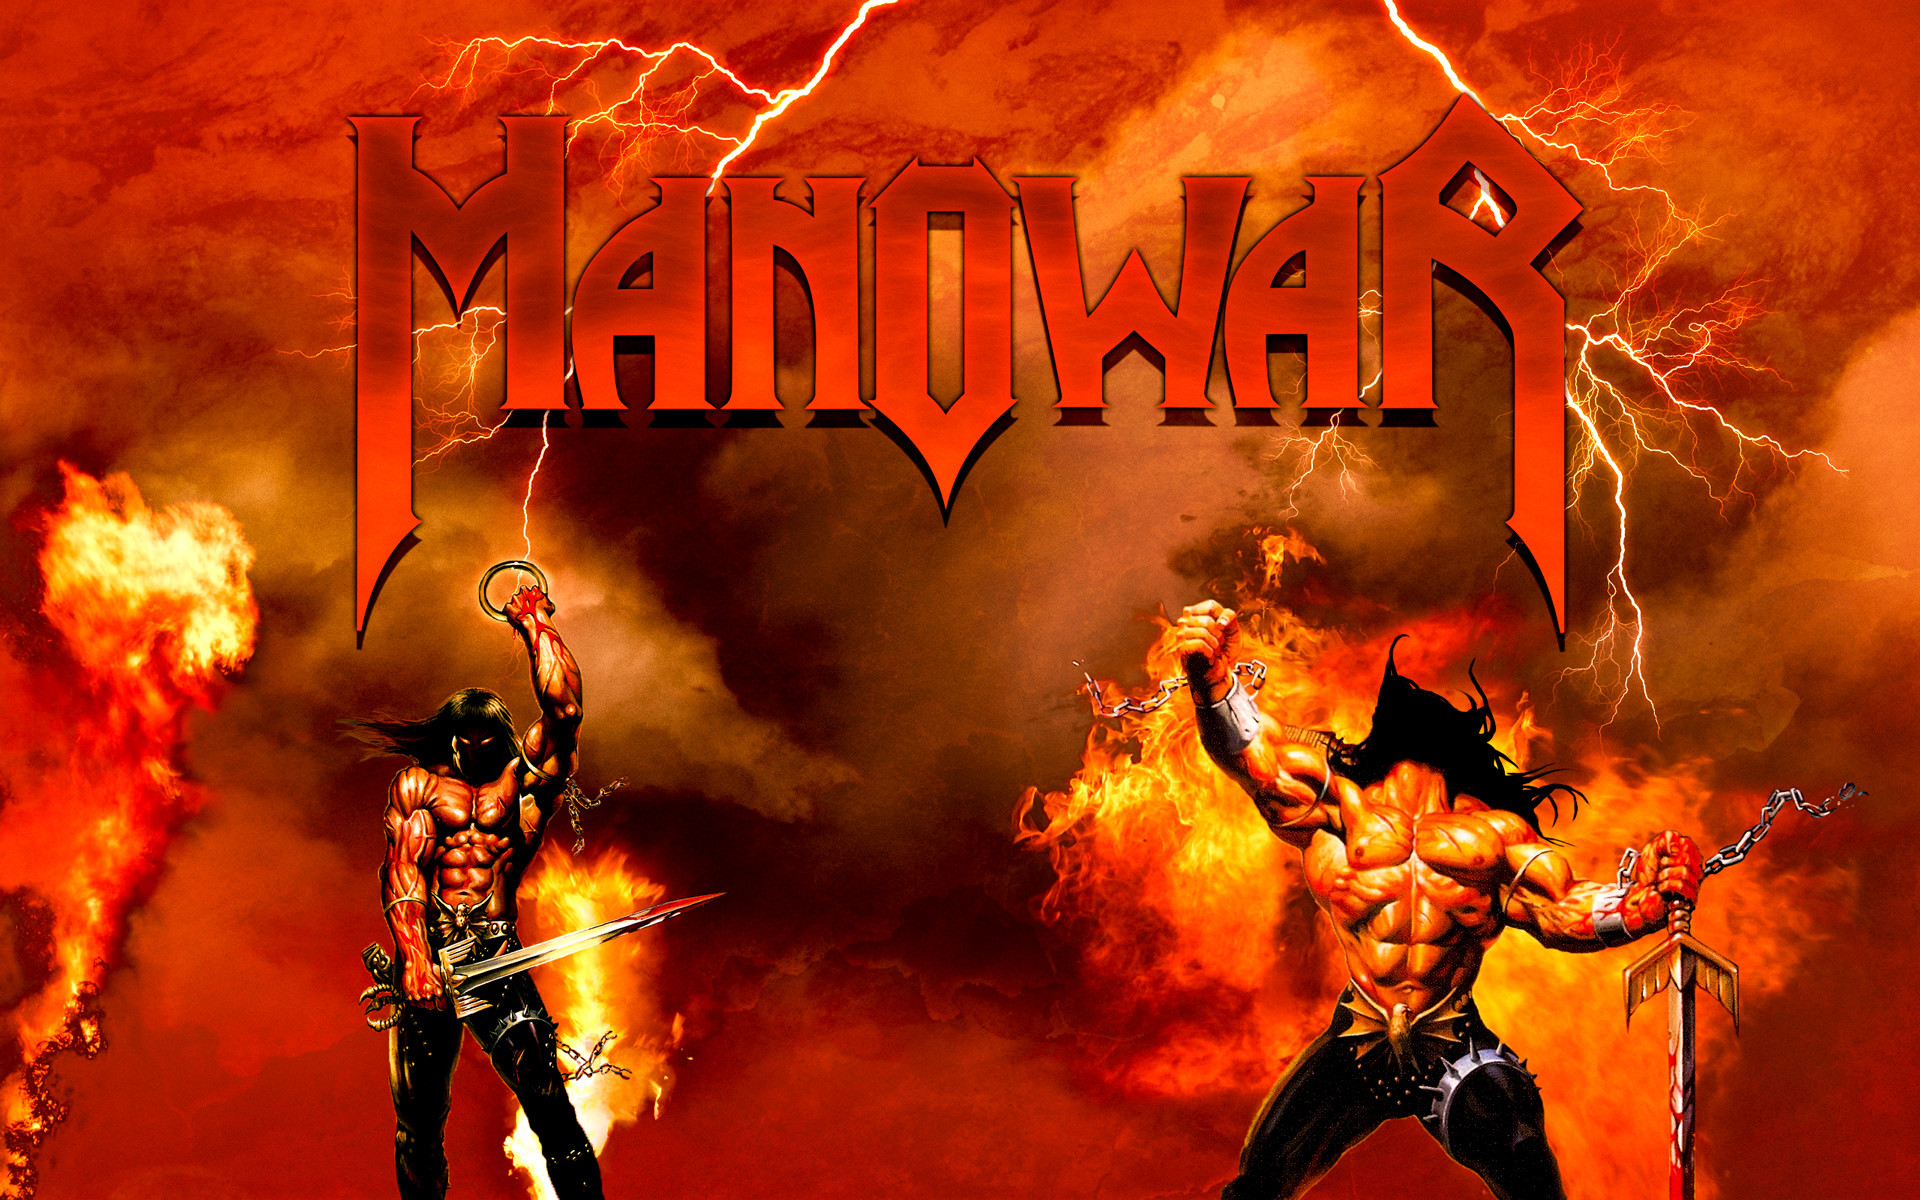 Manowar battle. Обложки дисков Manowar. Группа Manowar. Группа мановар постеры. Группа Manowar обложки.